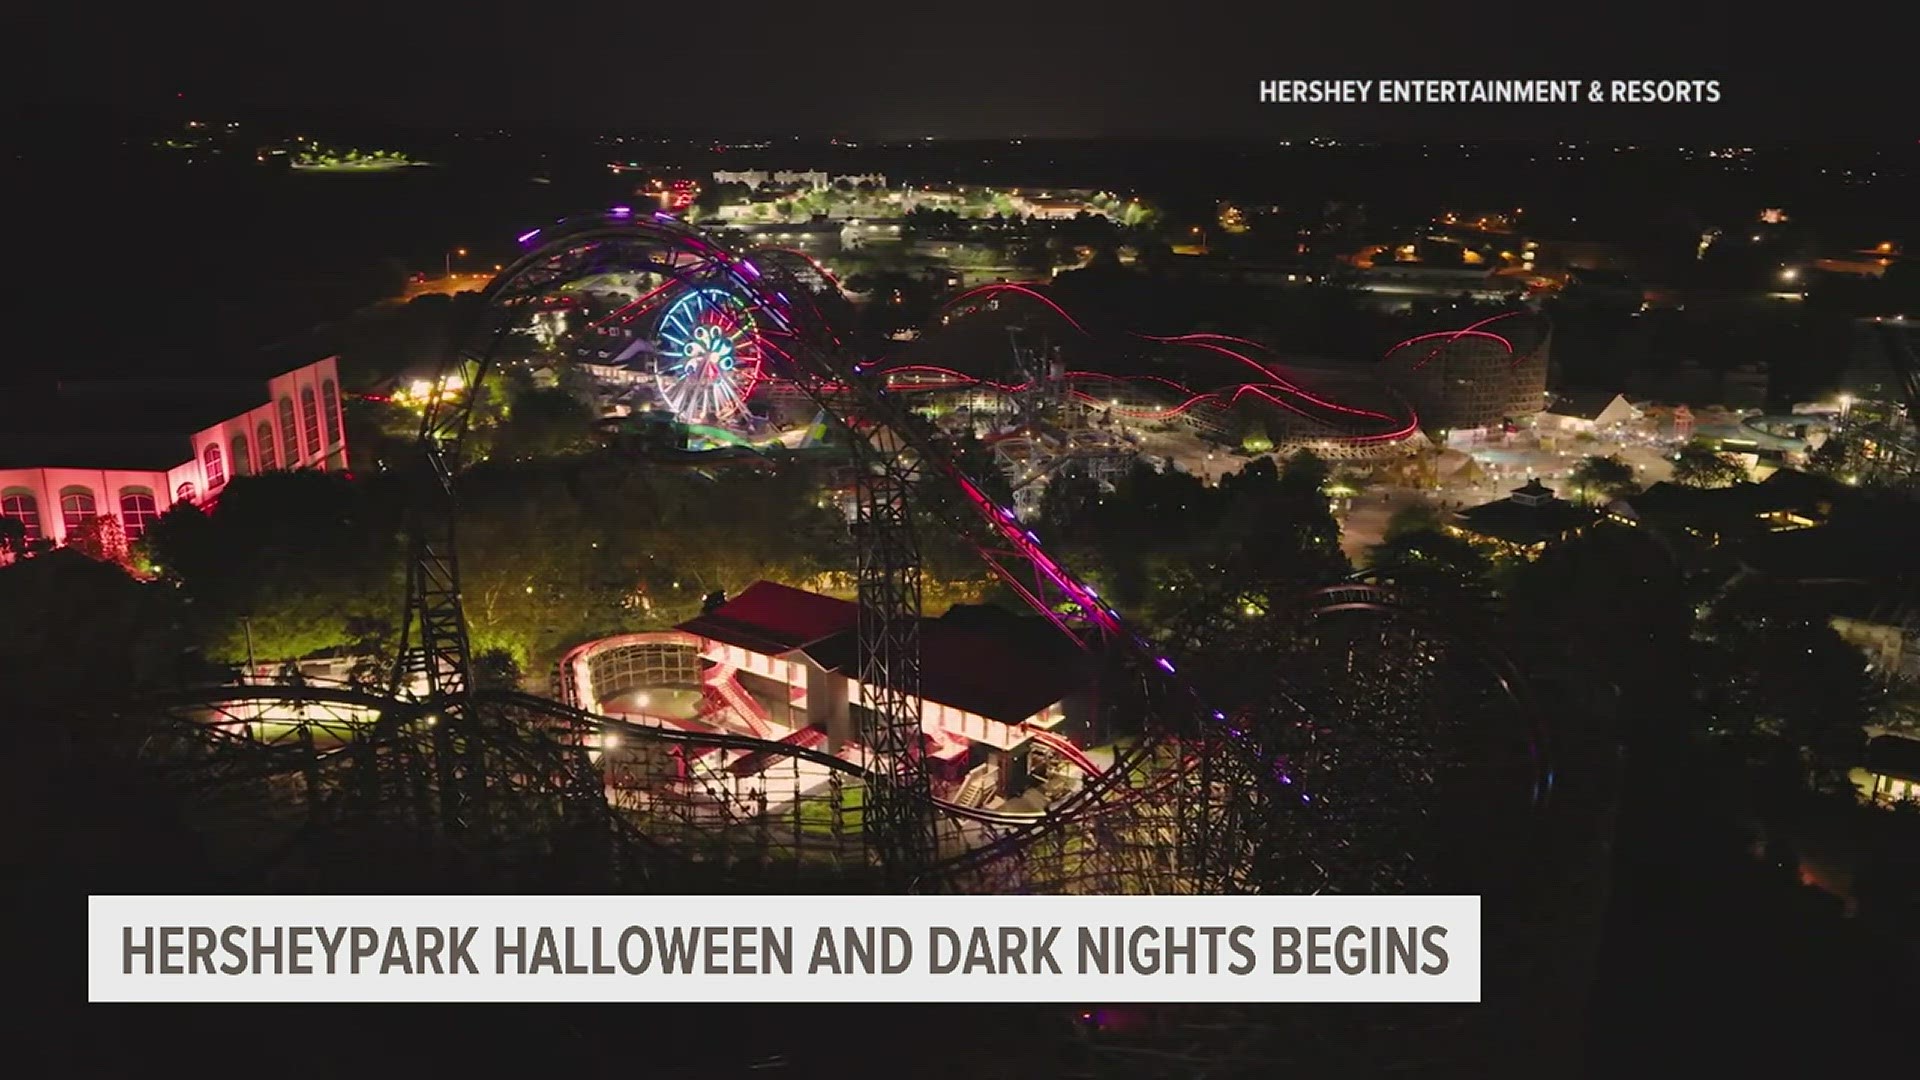 Hersheypark Halloween and Dark Nights will run from Sept. 15 through Oct. 29.